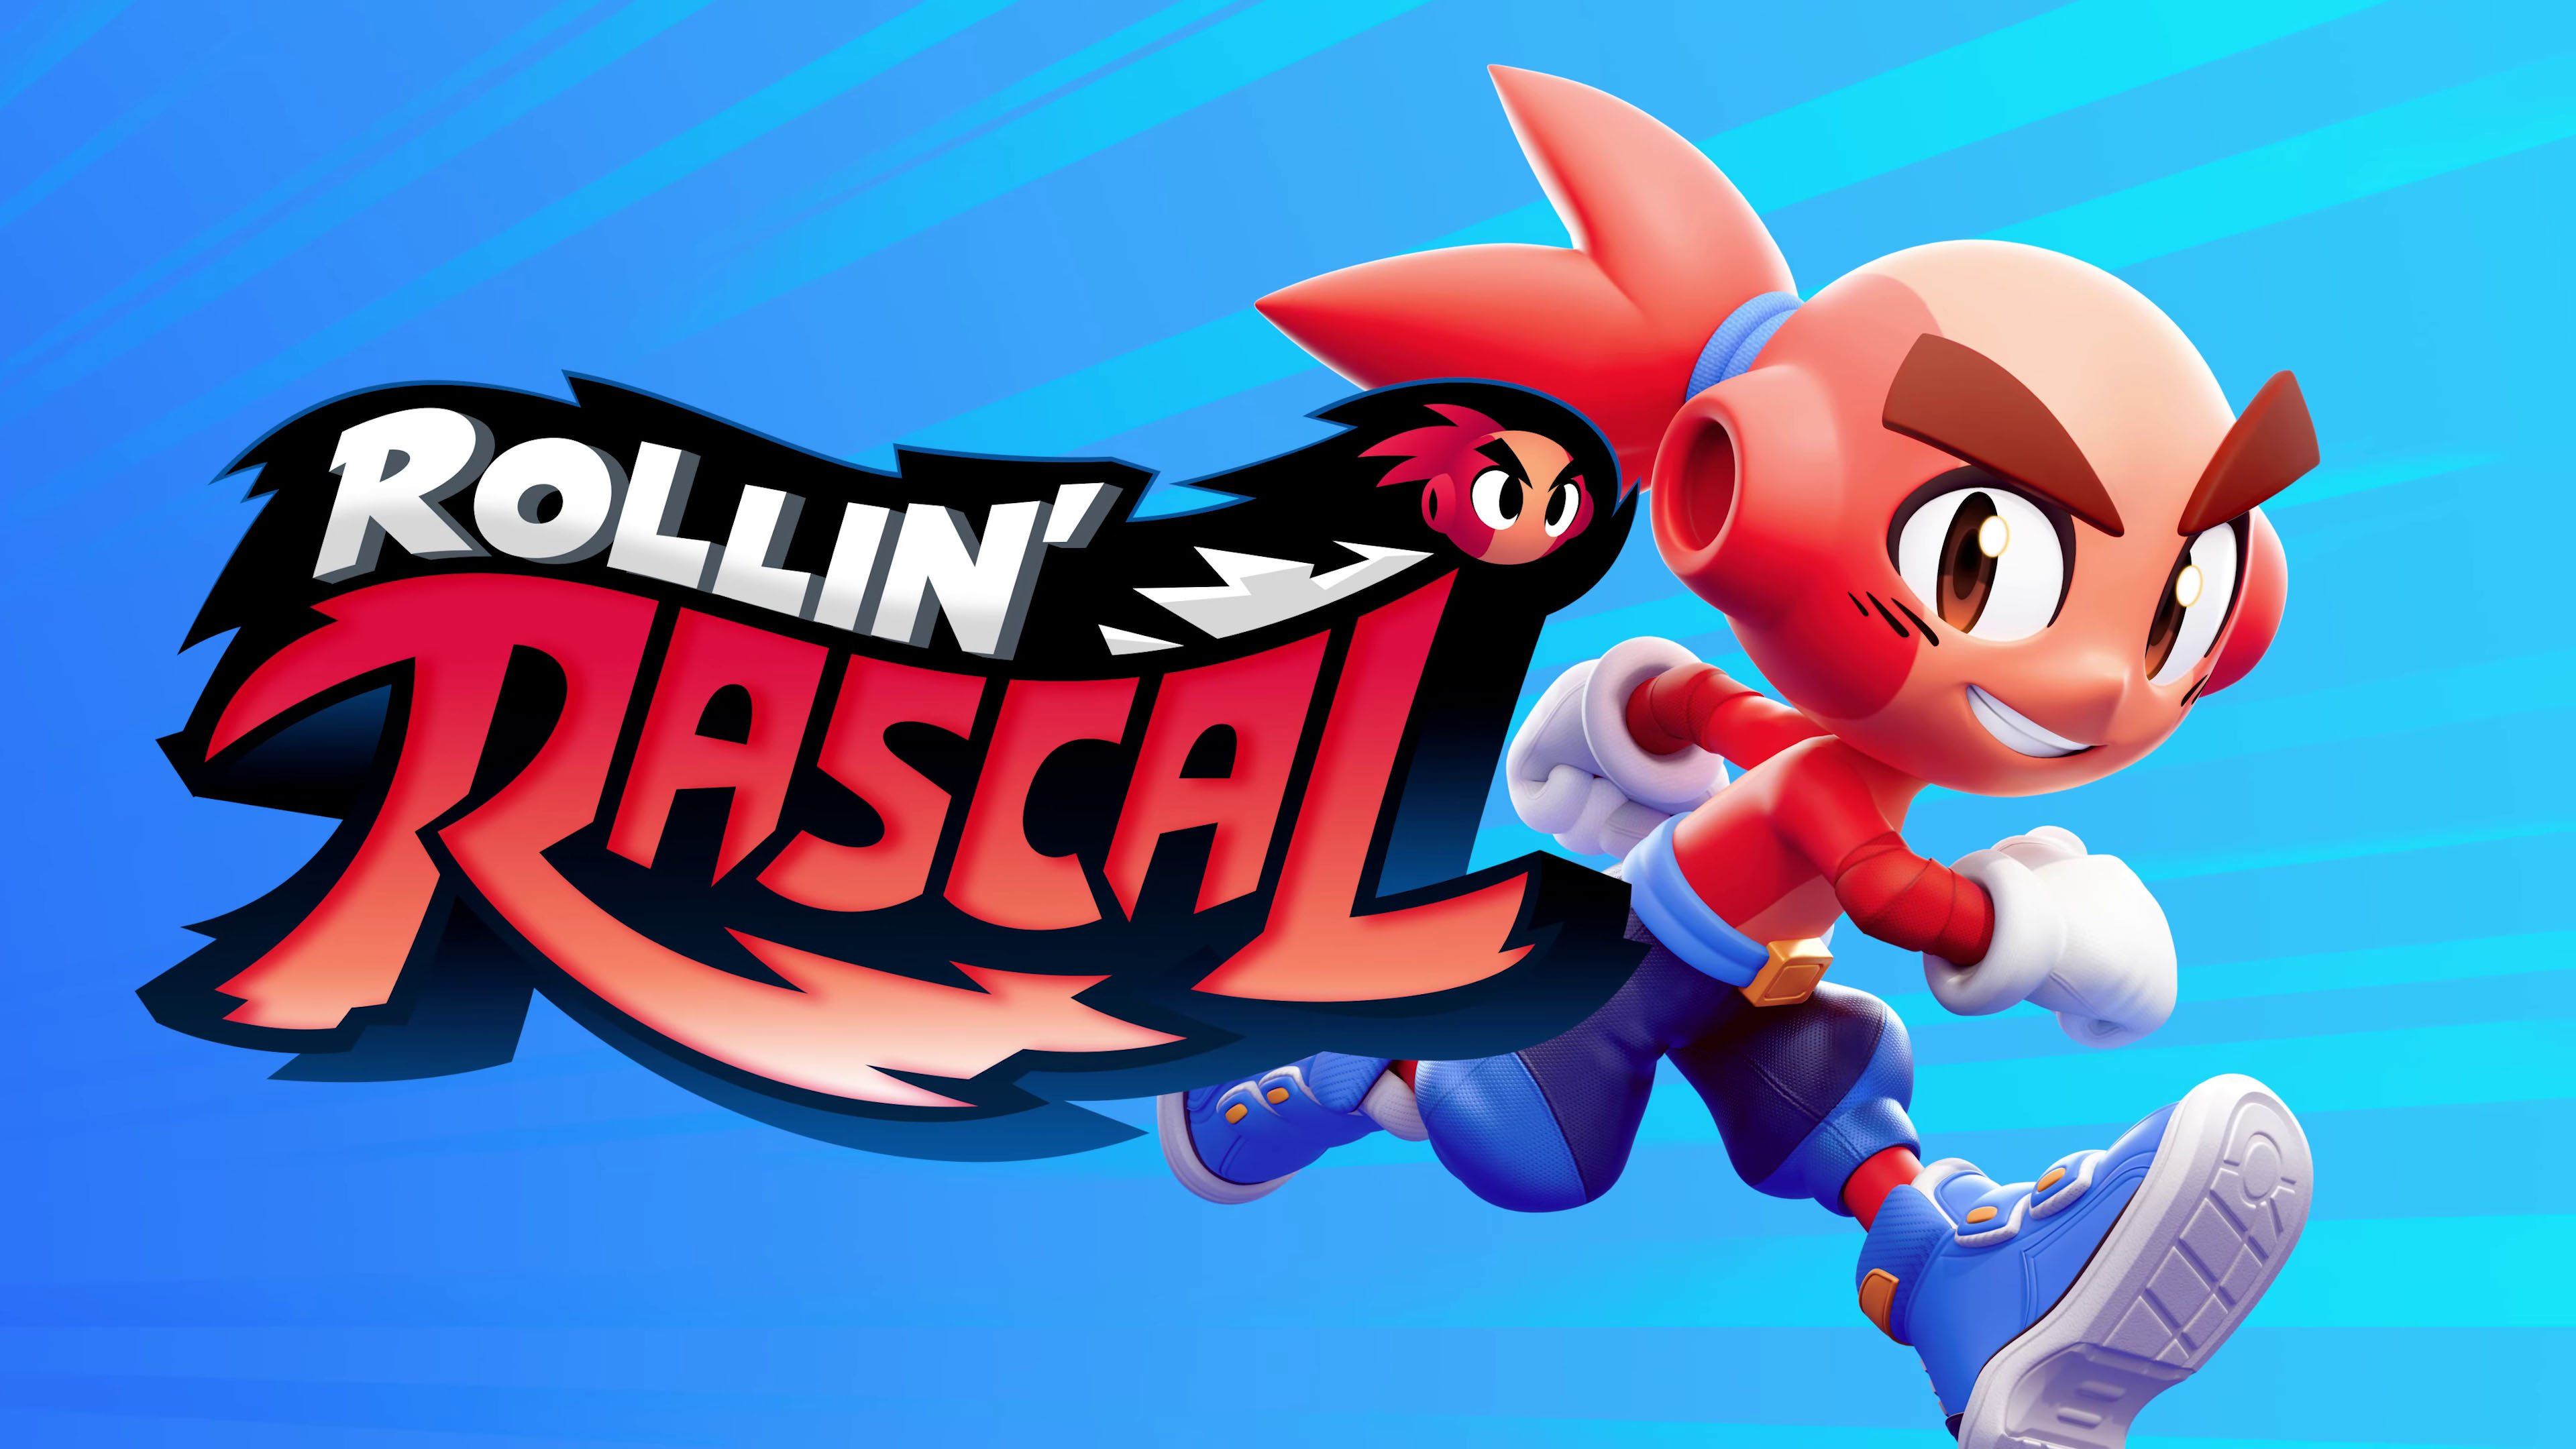 Rollin' Rascal, annunciato il platform 3D ispirato a Mario e Sonic